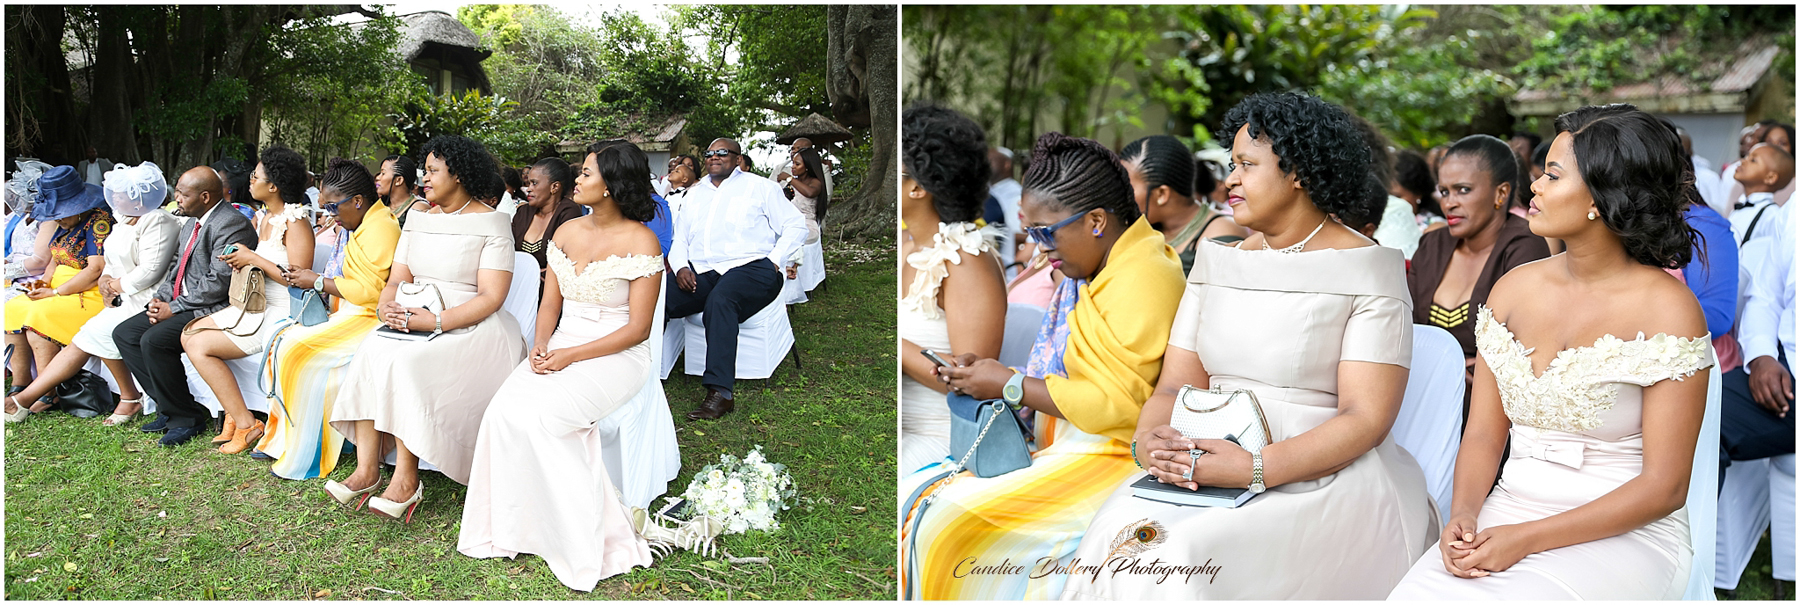 Inkwenkwezi wedding - Candice Dollery Photography_3988